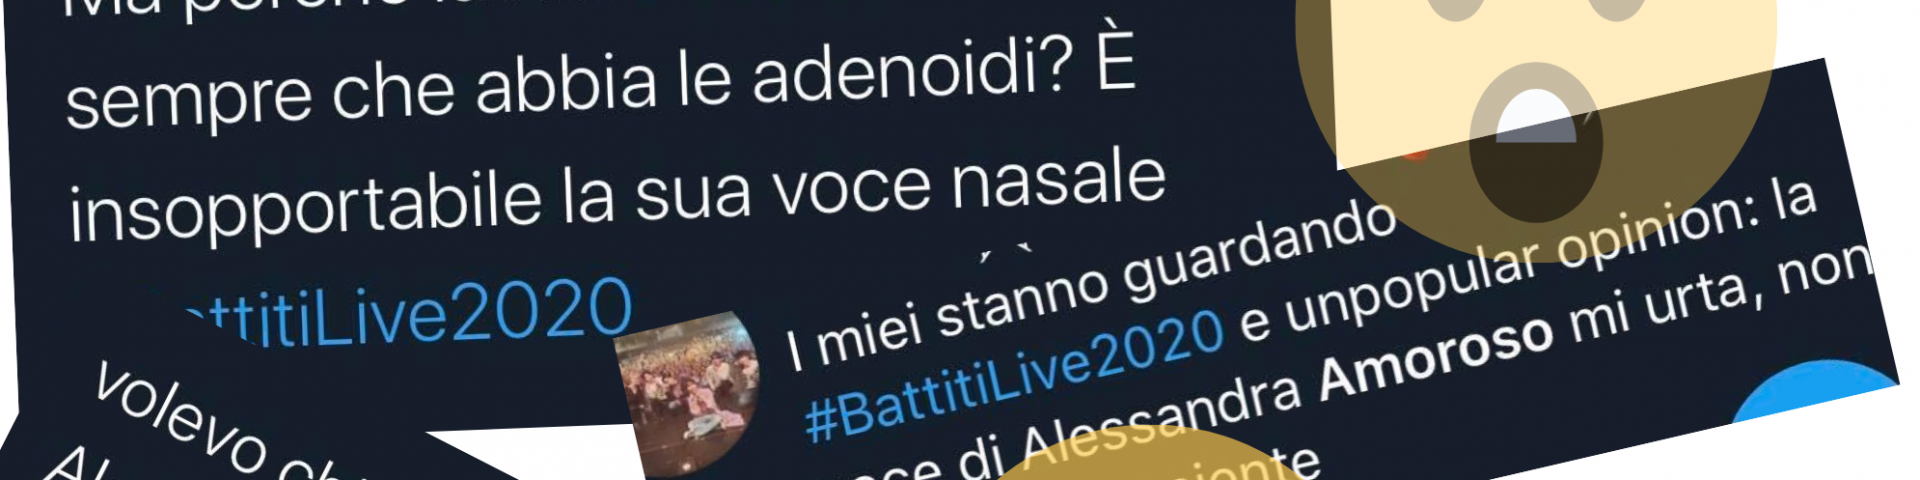 Alessandra Amoroso attaccata su Twitter dopo l’ultima esibizione al Battiti Live: ecco cos’è successo